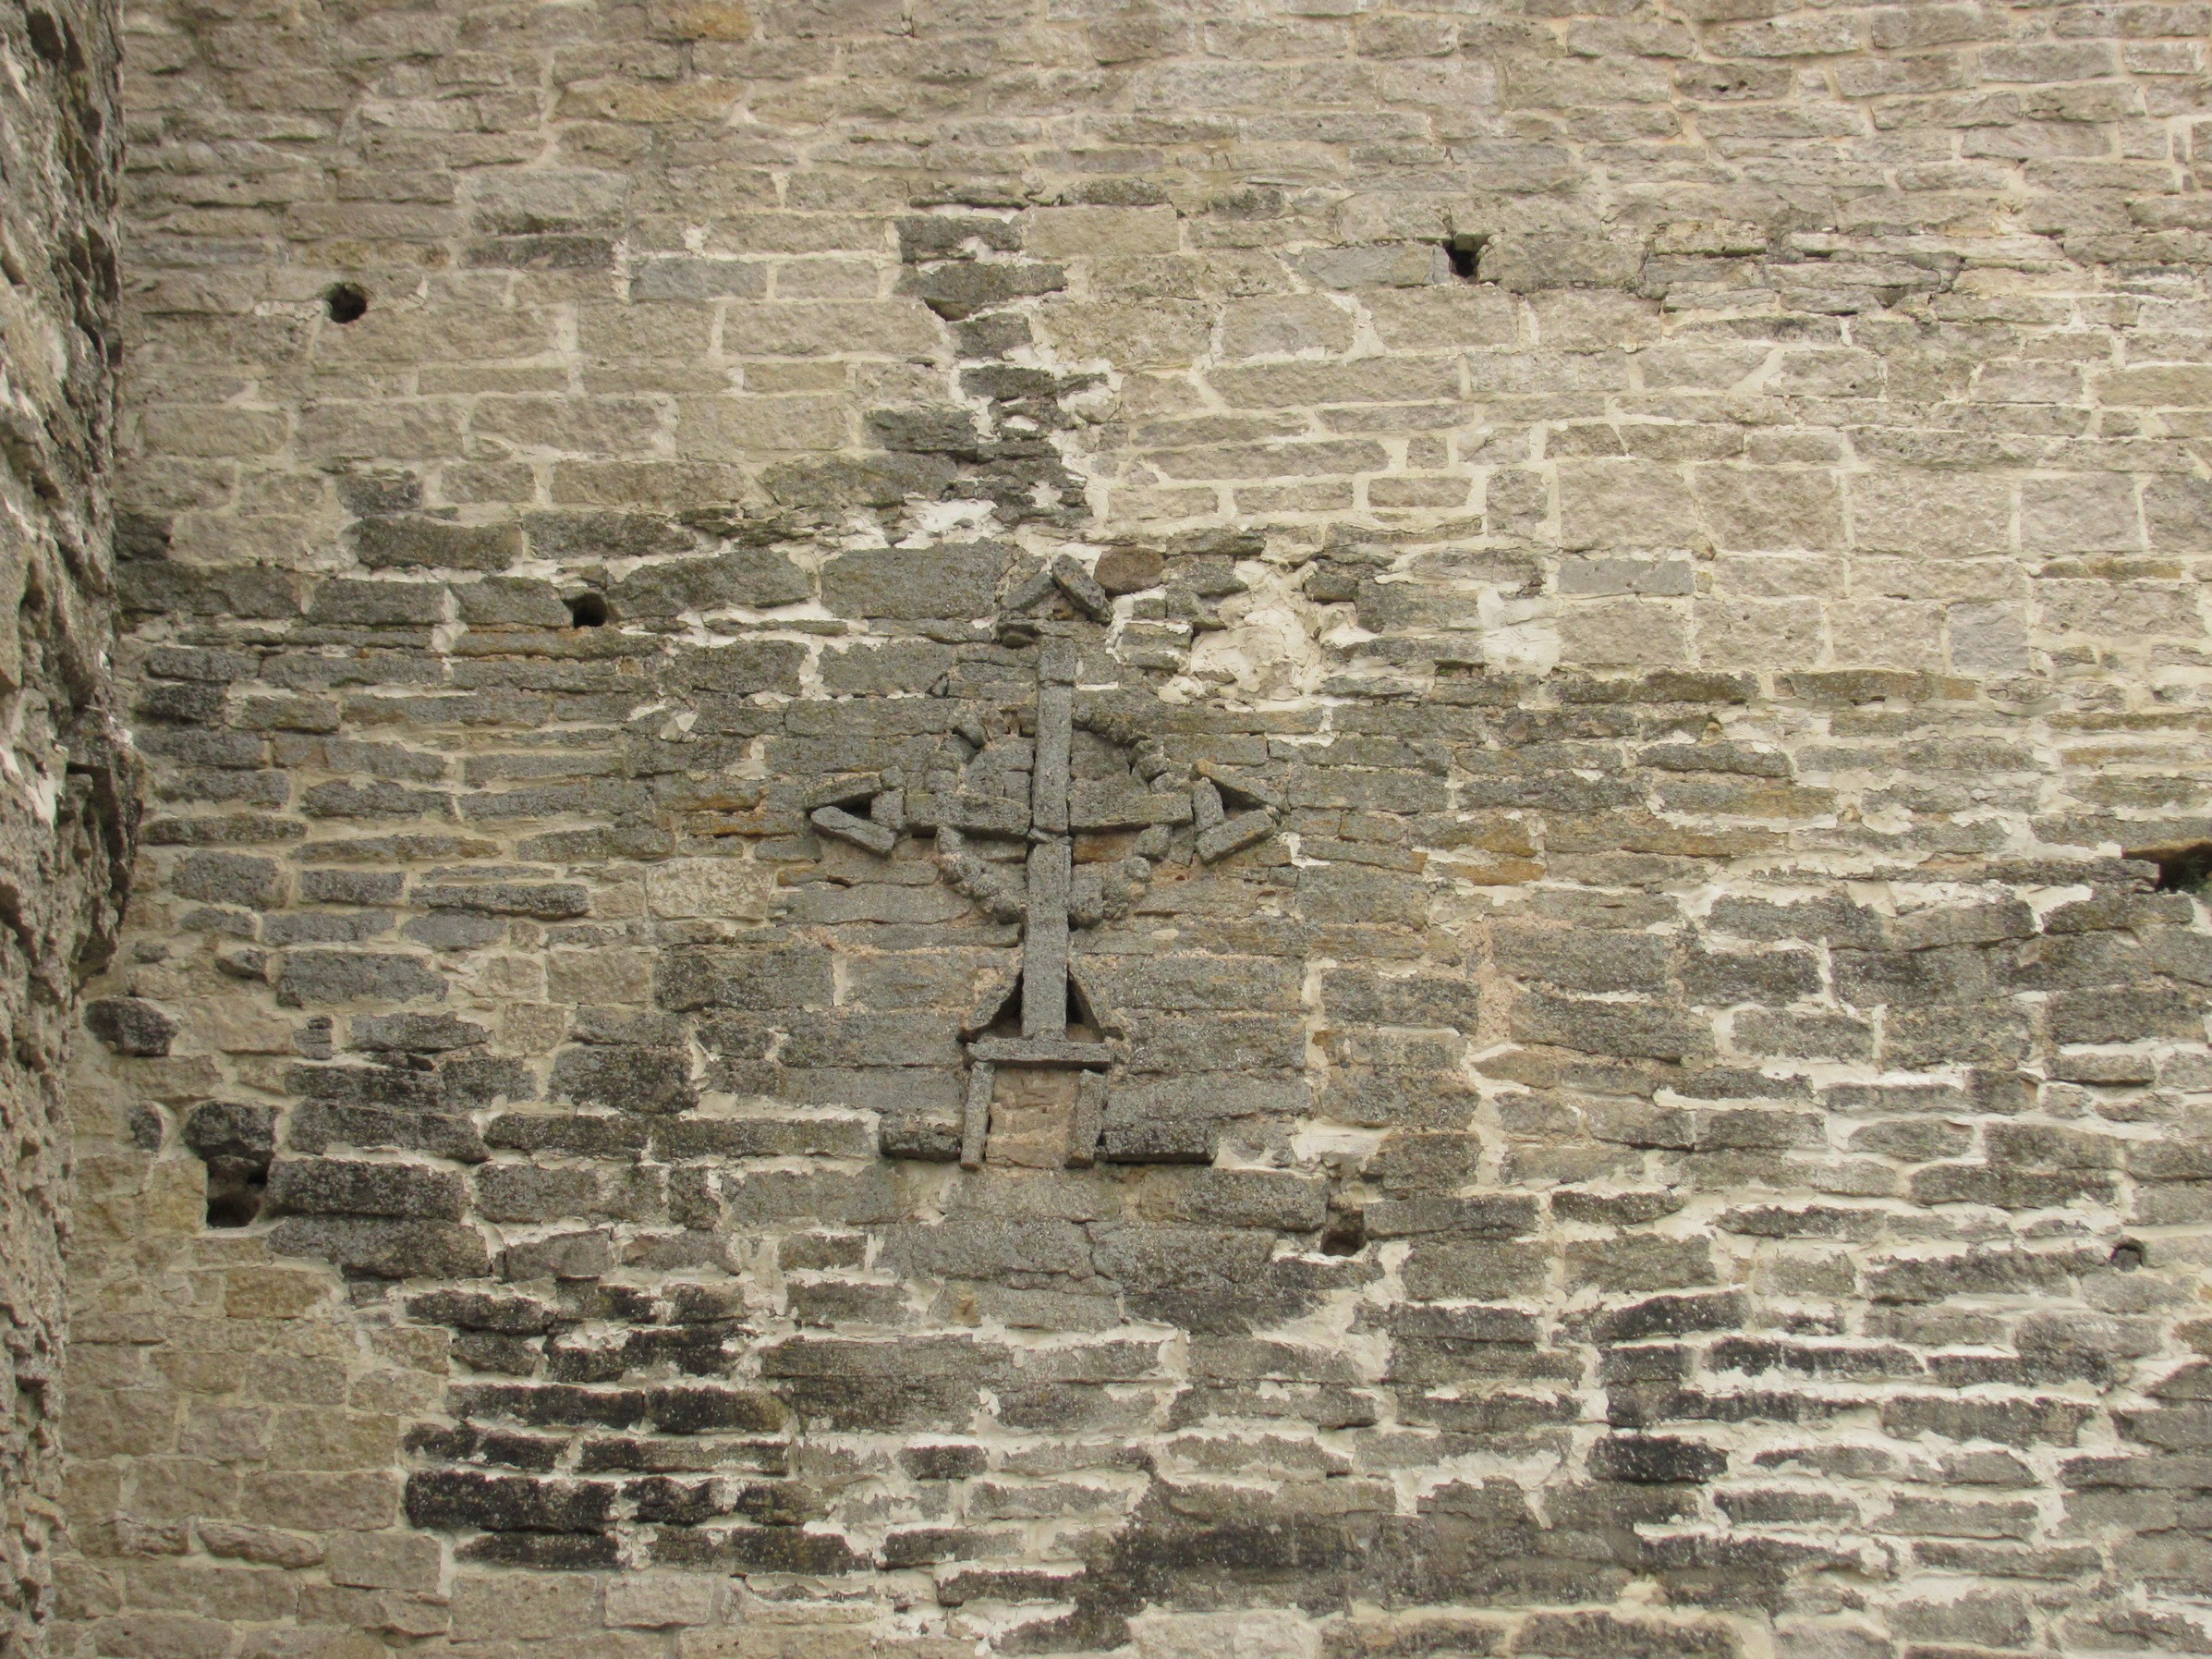 Крест на стене